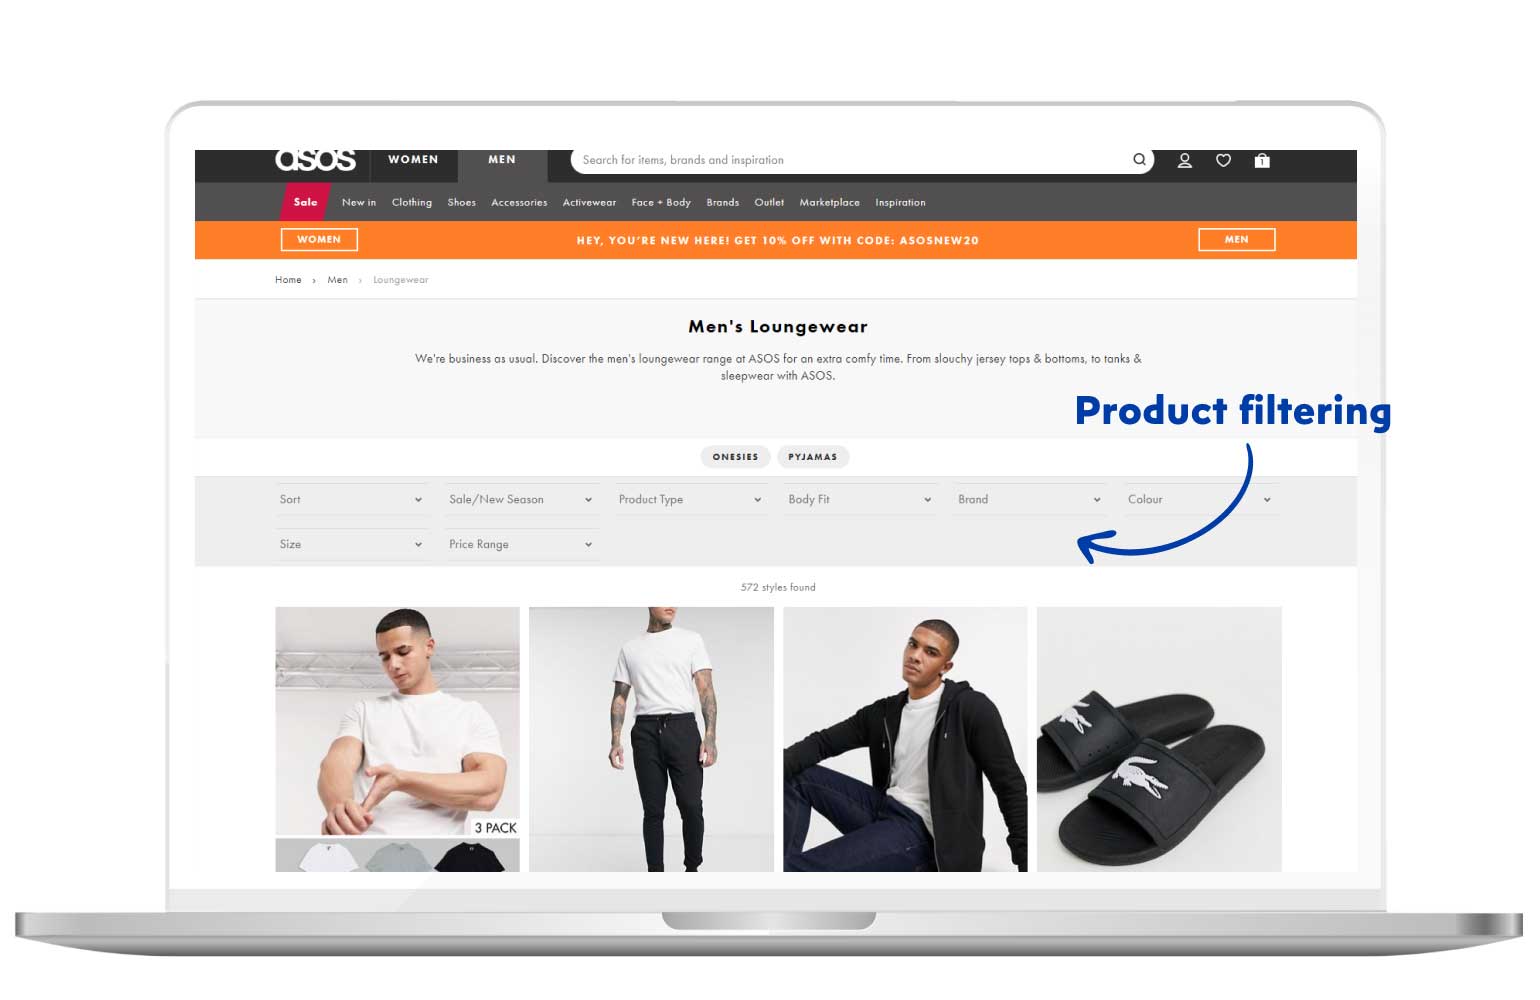 Thiết kế web thương mại điện tử với chức năng tìm kiếm sản phẩm sao cho tối ưu, tiện lợi cho người dùng